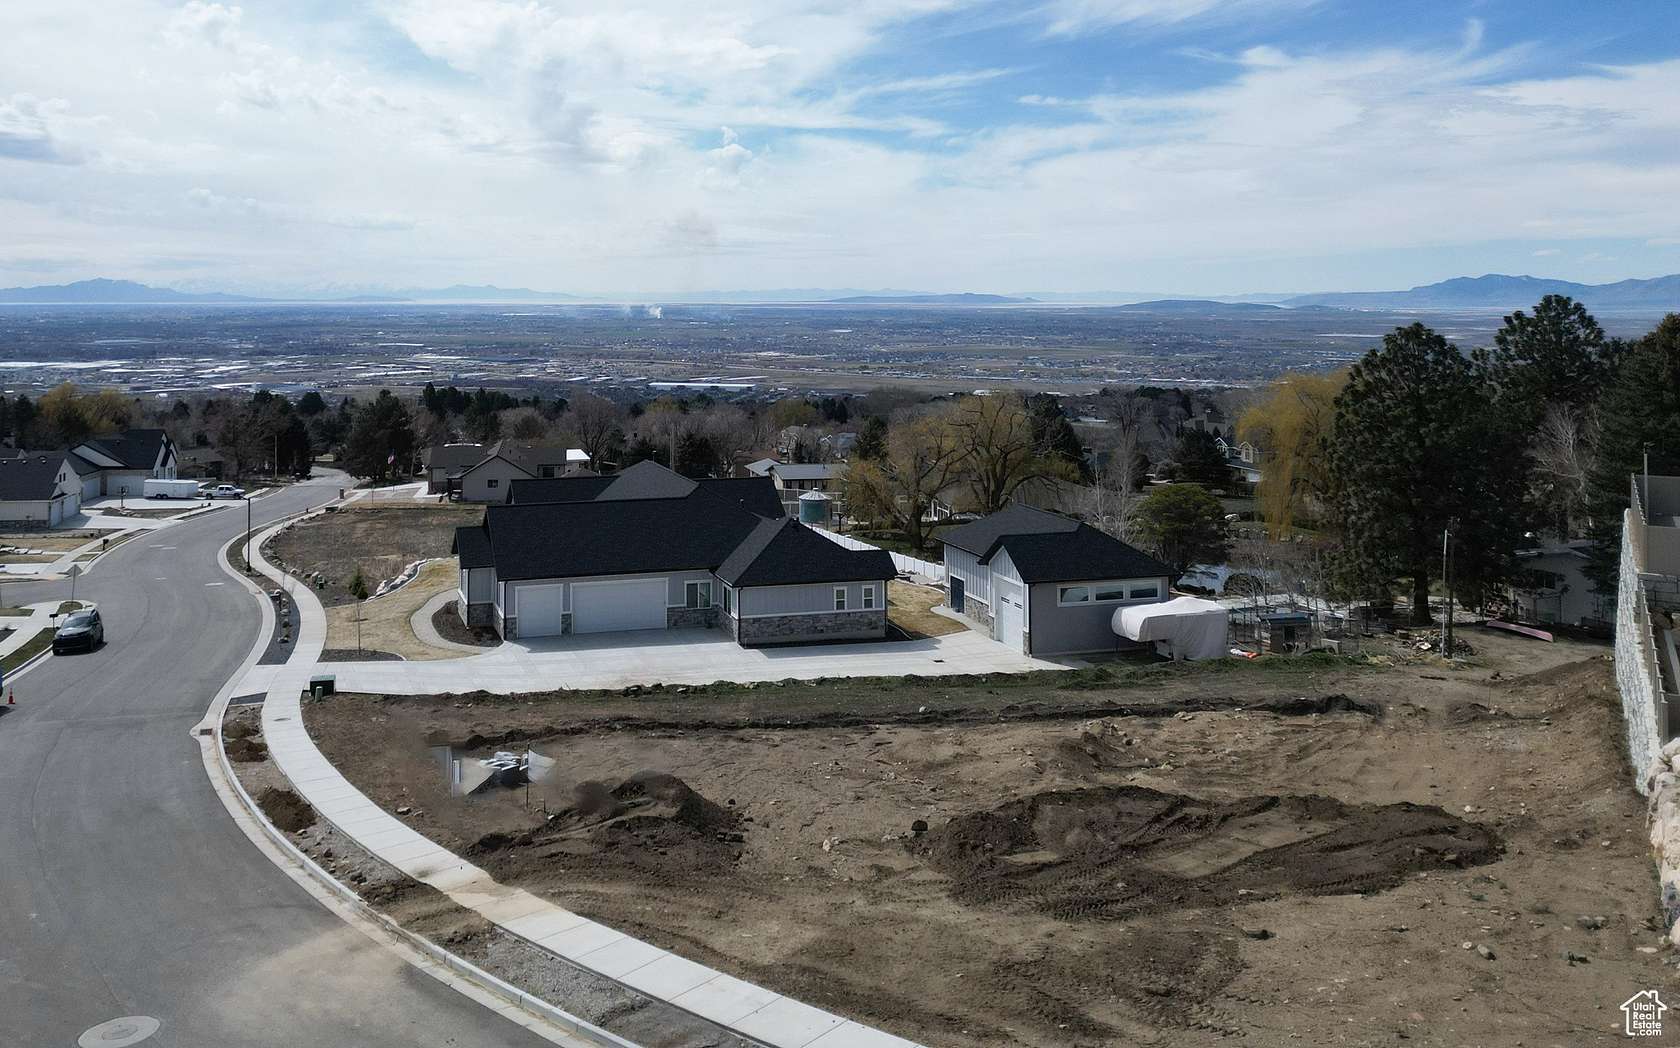 0.46 Acres of Residential Land for Sale in Ogden, Utah